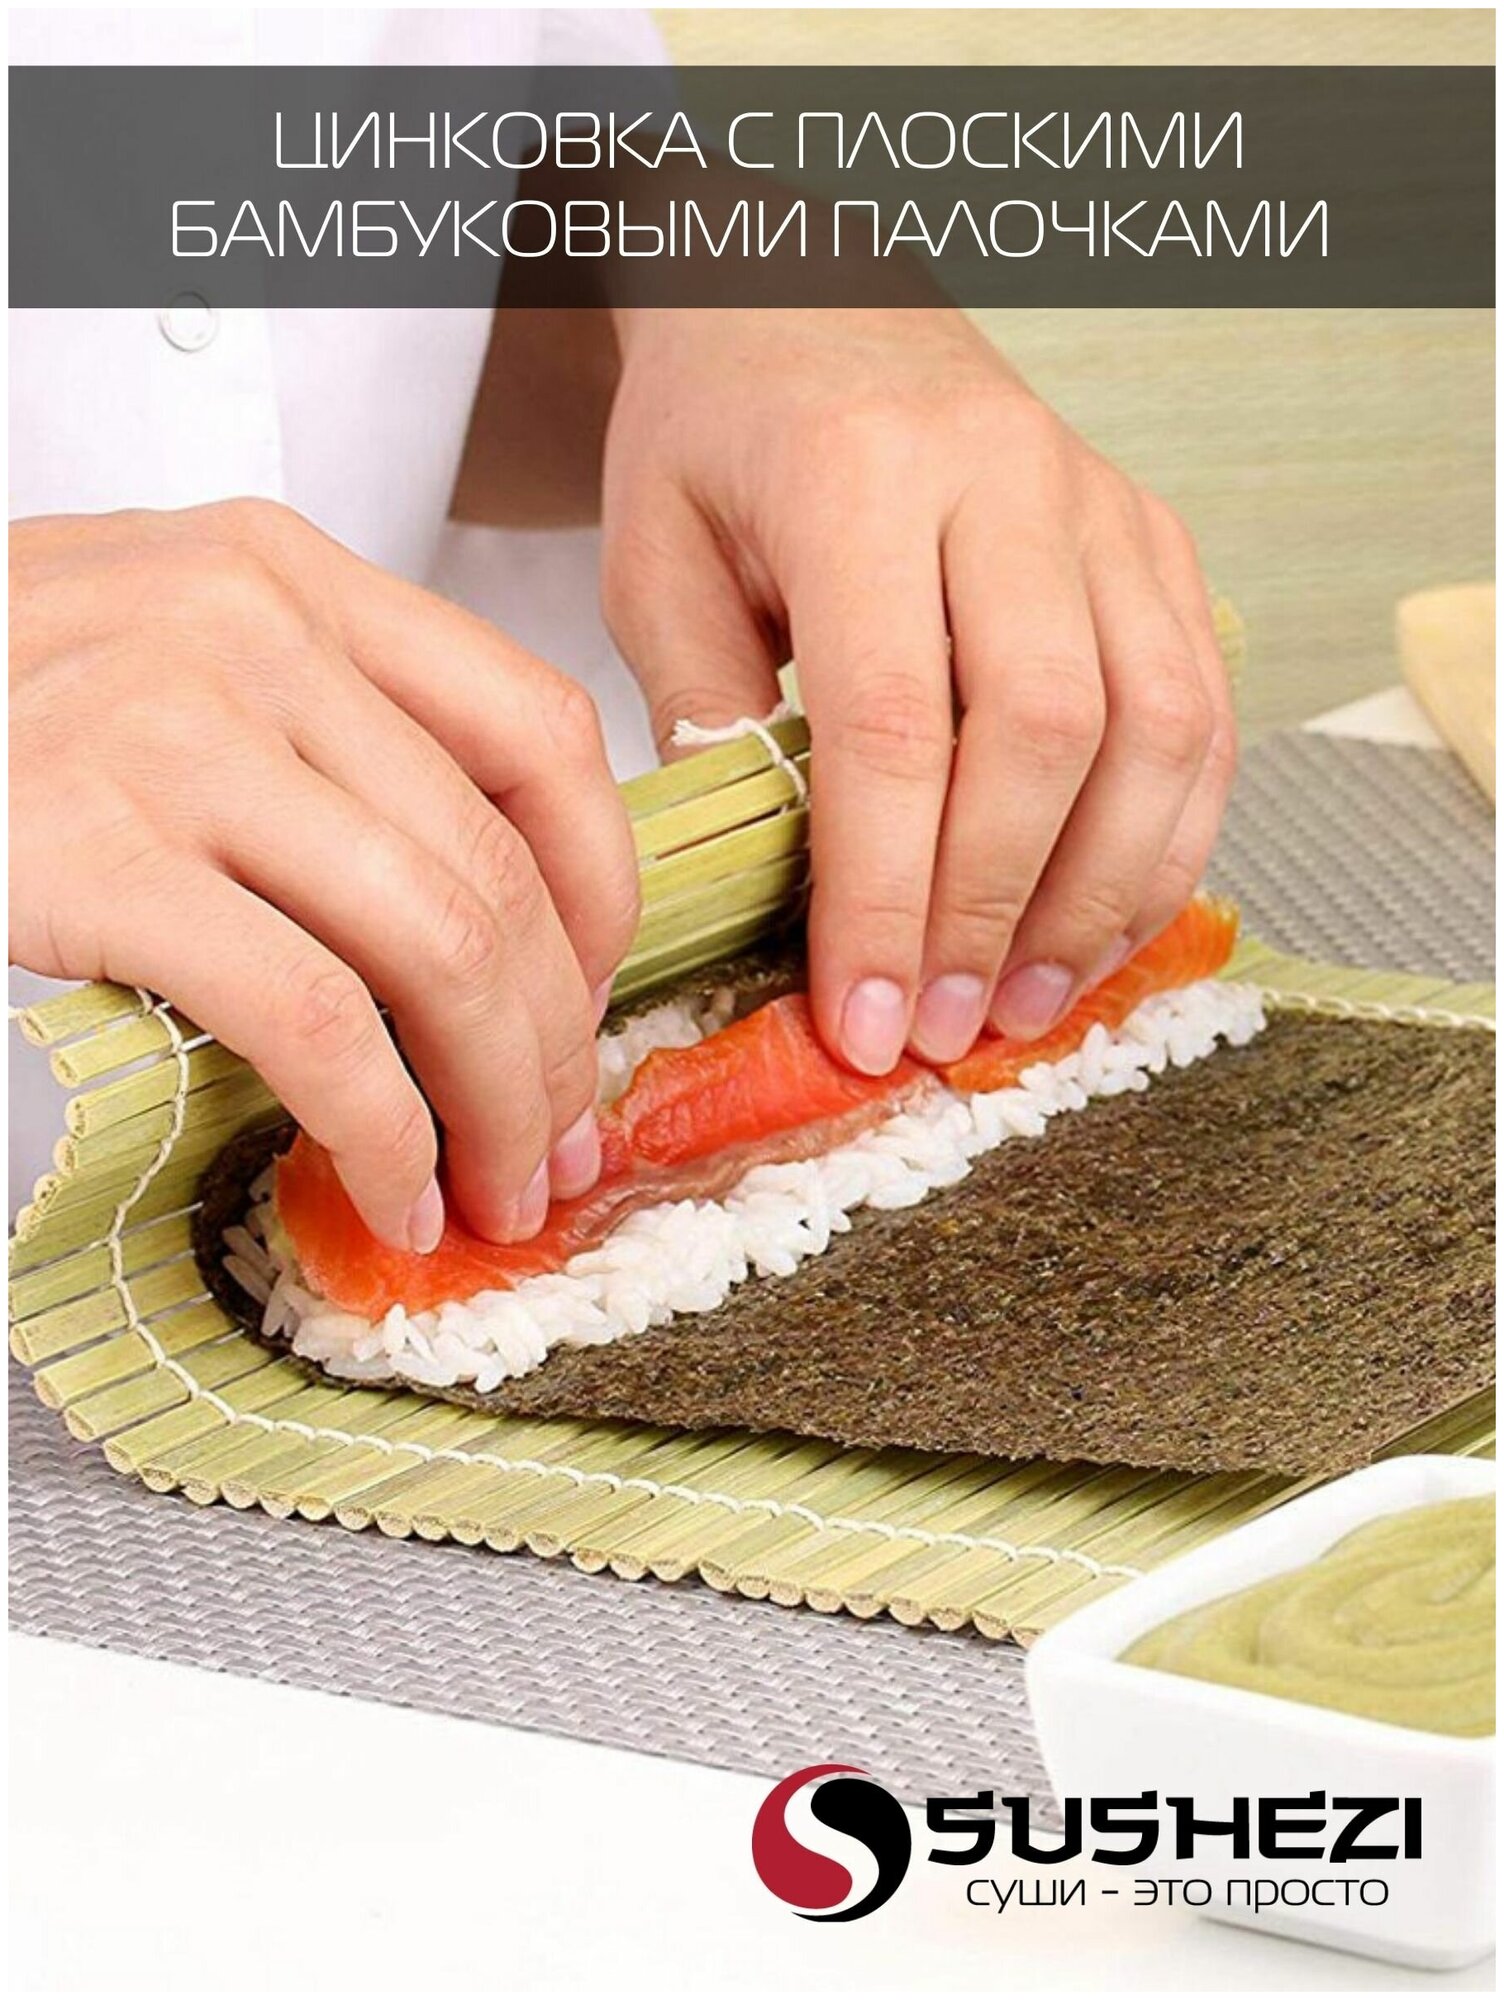 Как приготовить суши в домашних условиях пошаговый запеченные фото 59